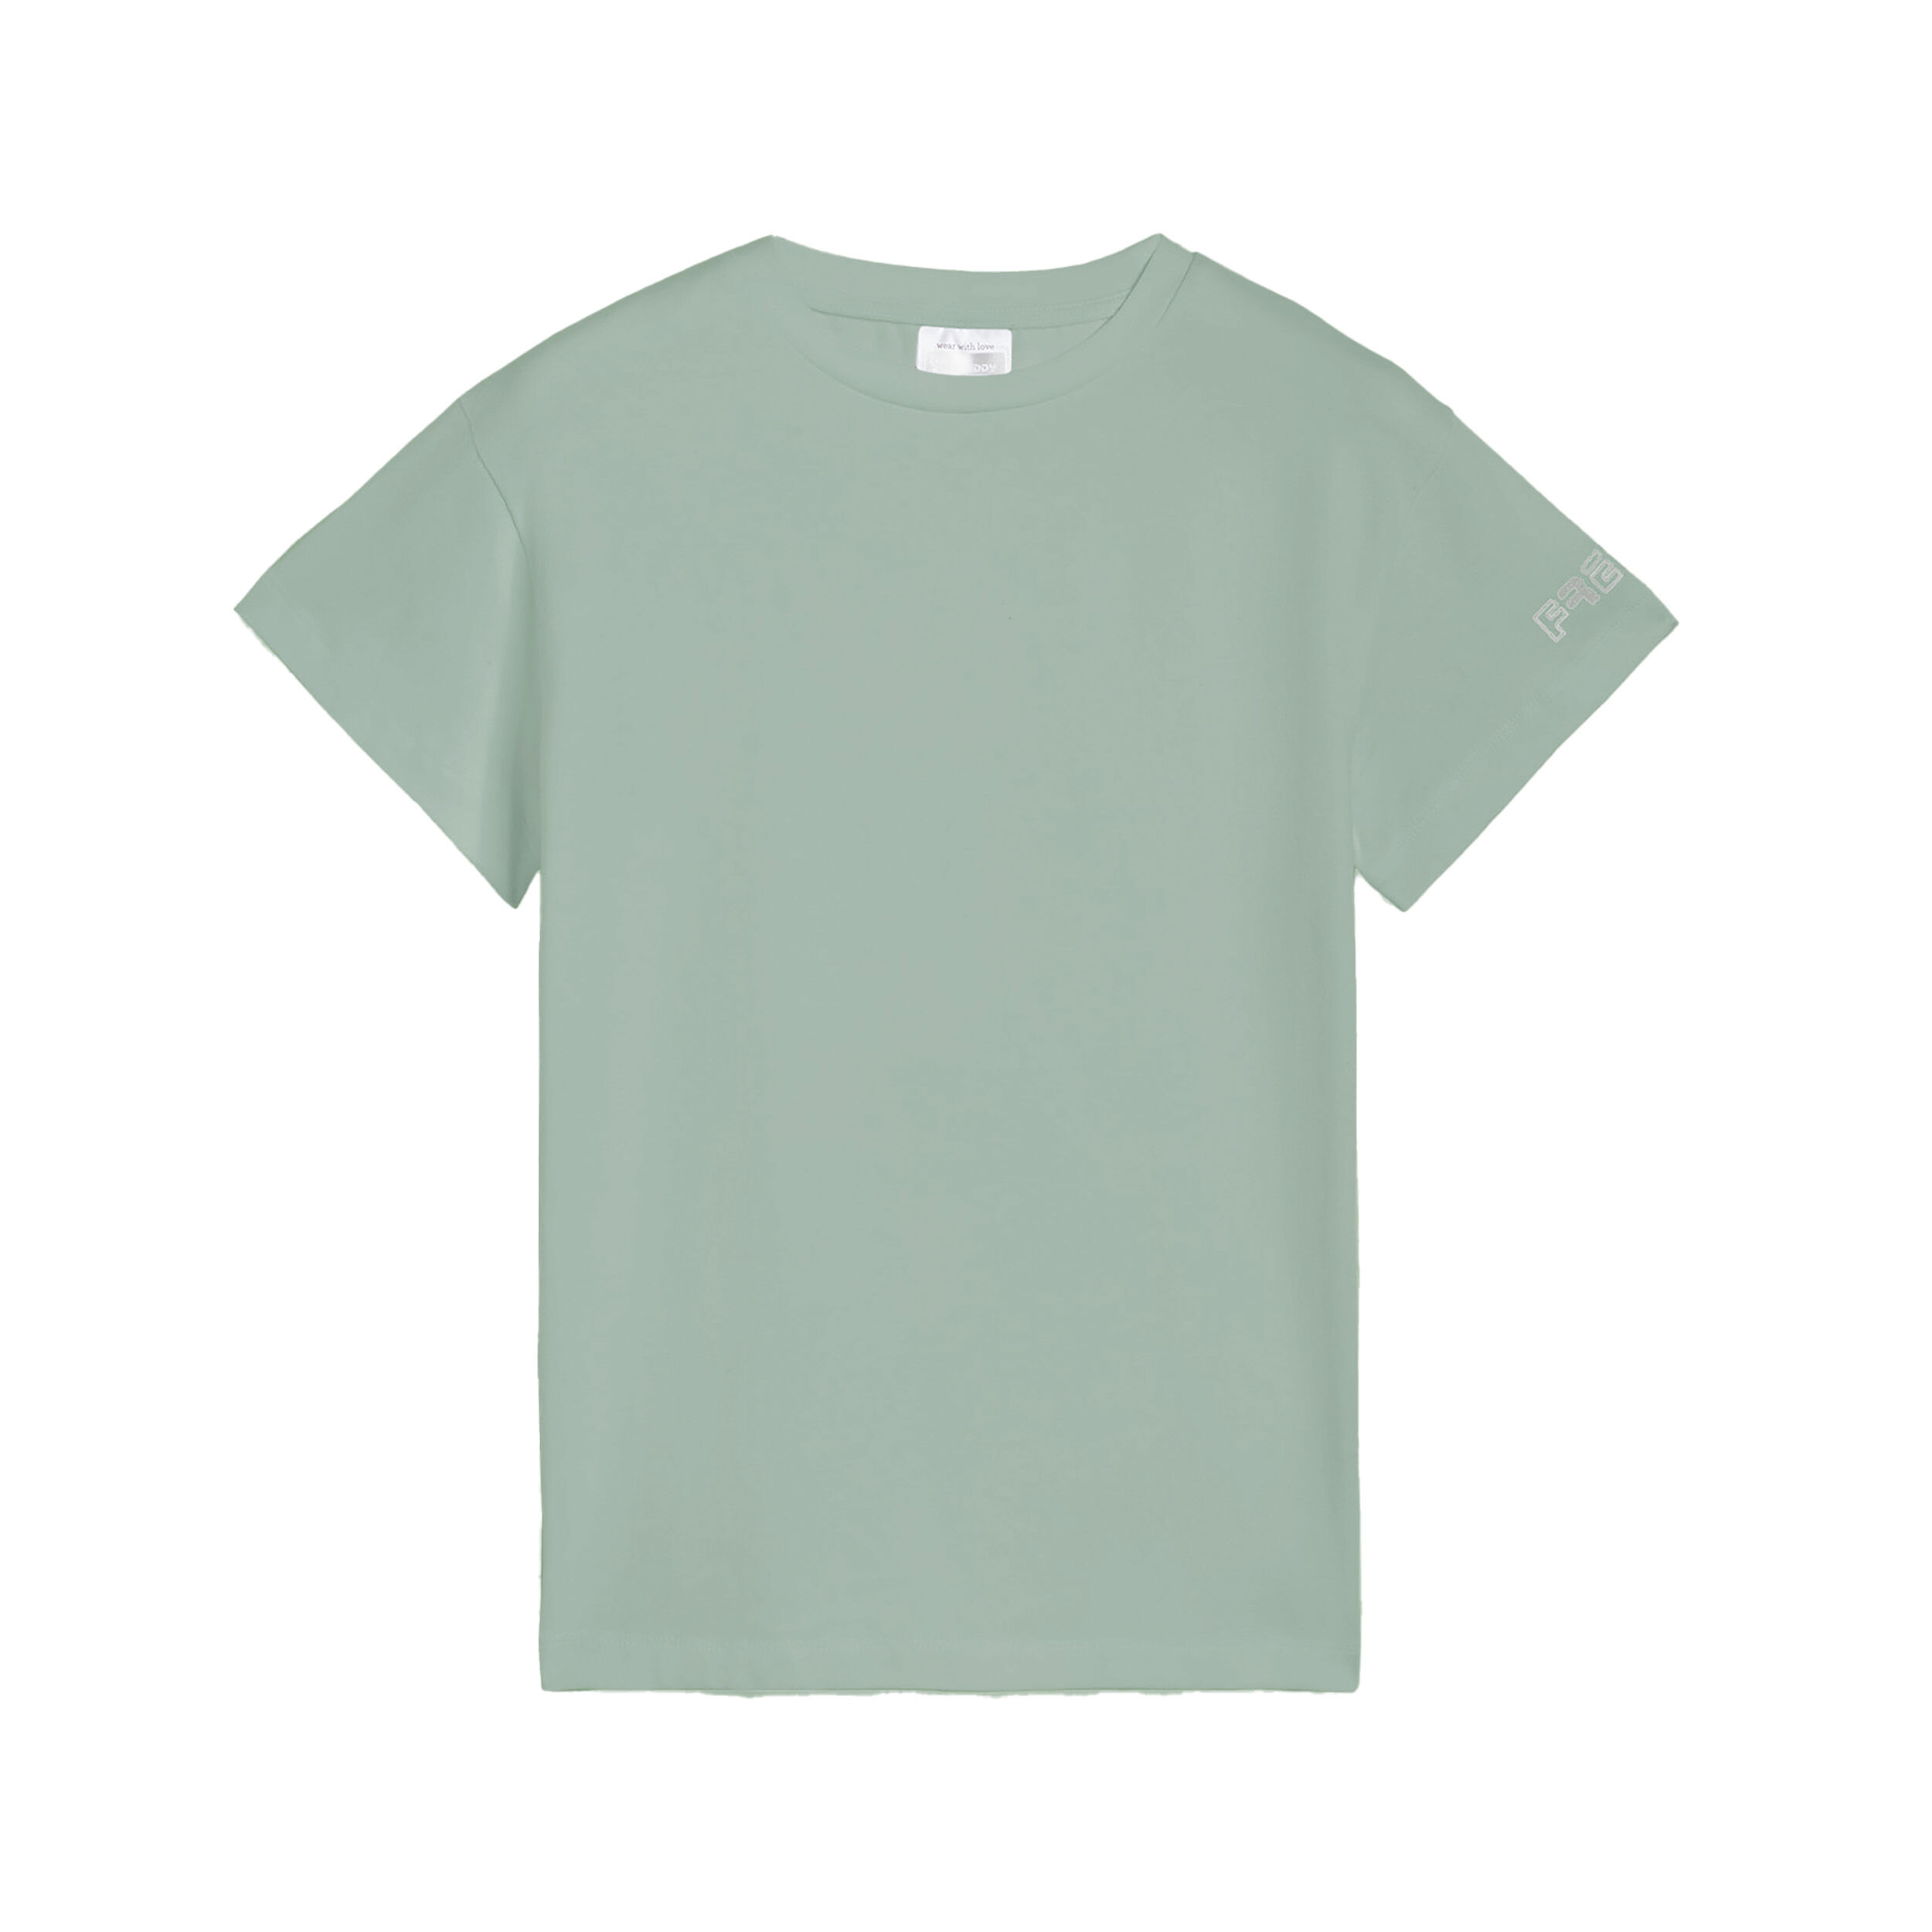 Freddy T-shirt da bambina regular fit con logo sulla manica Verde Militare Junior 8 Anni